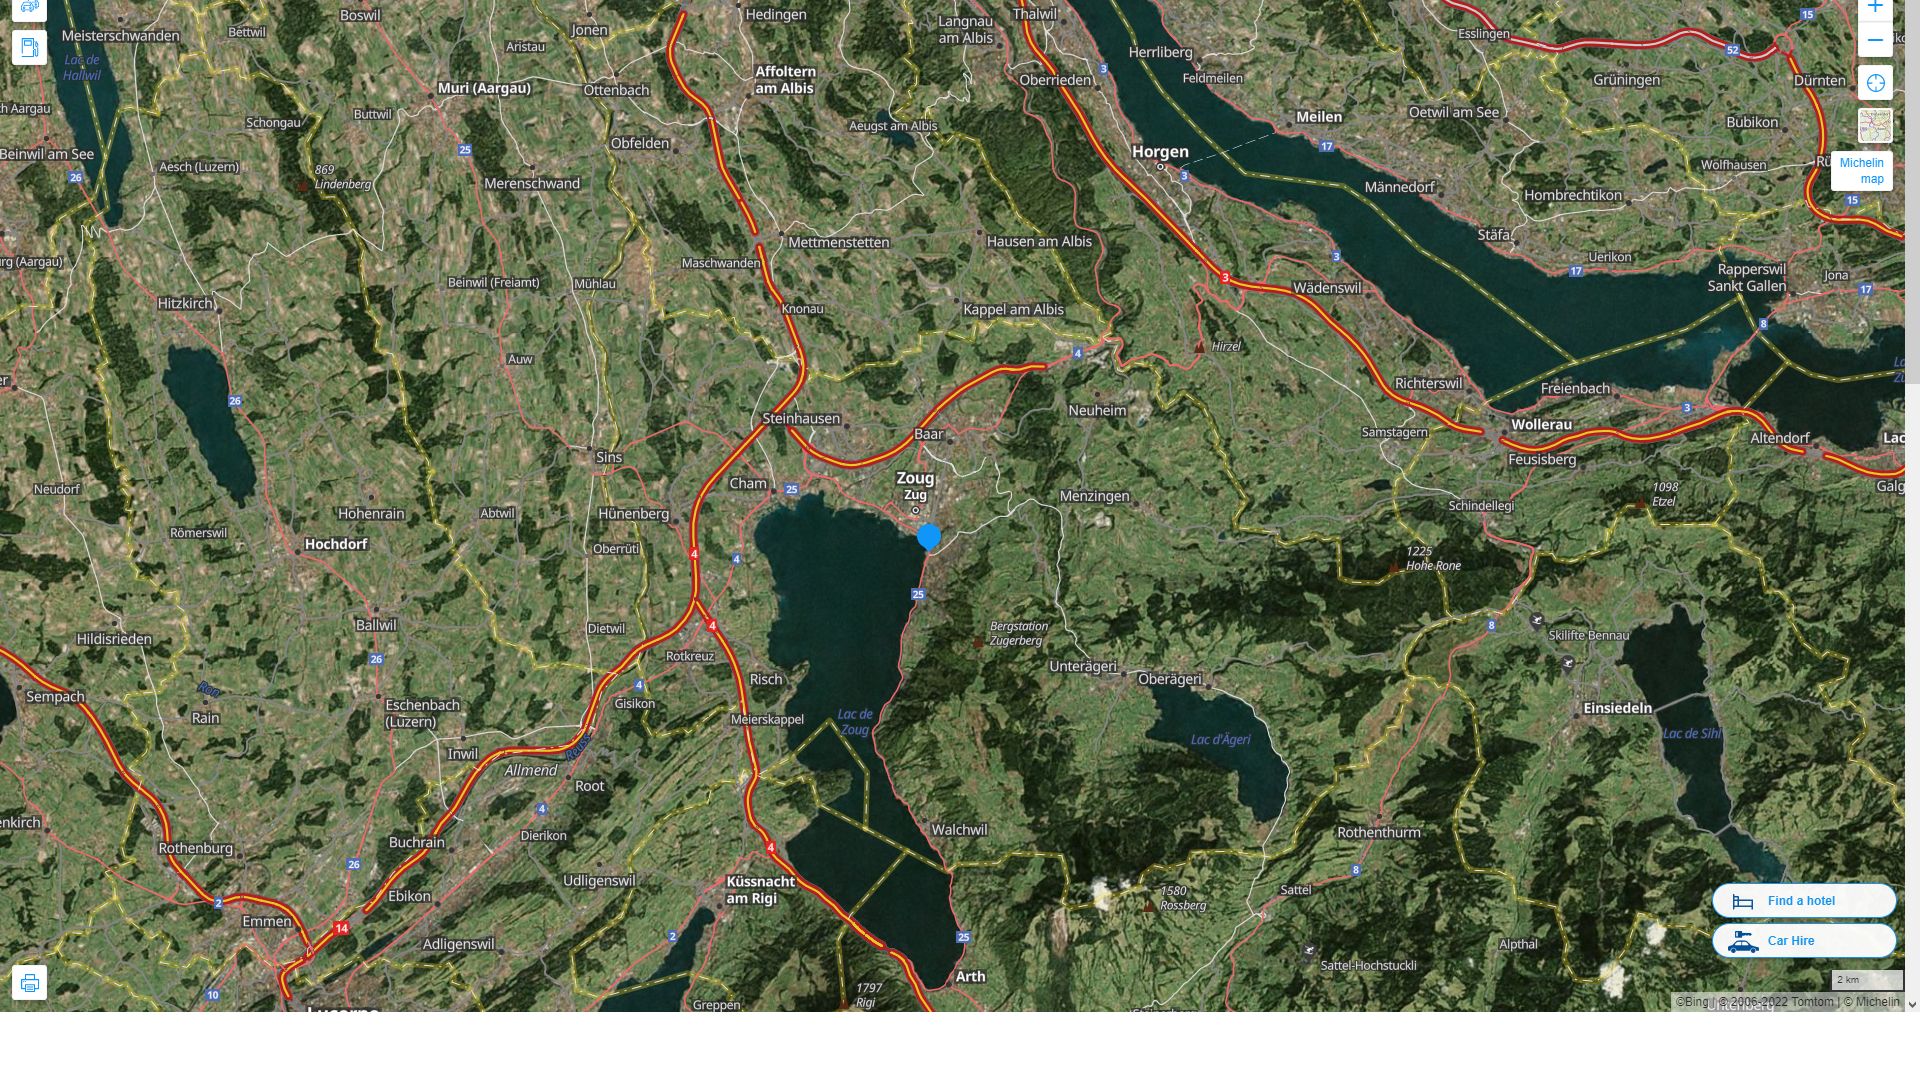 Zug Suisse Autoroute et carte routiere avec vue satellite